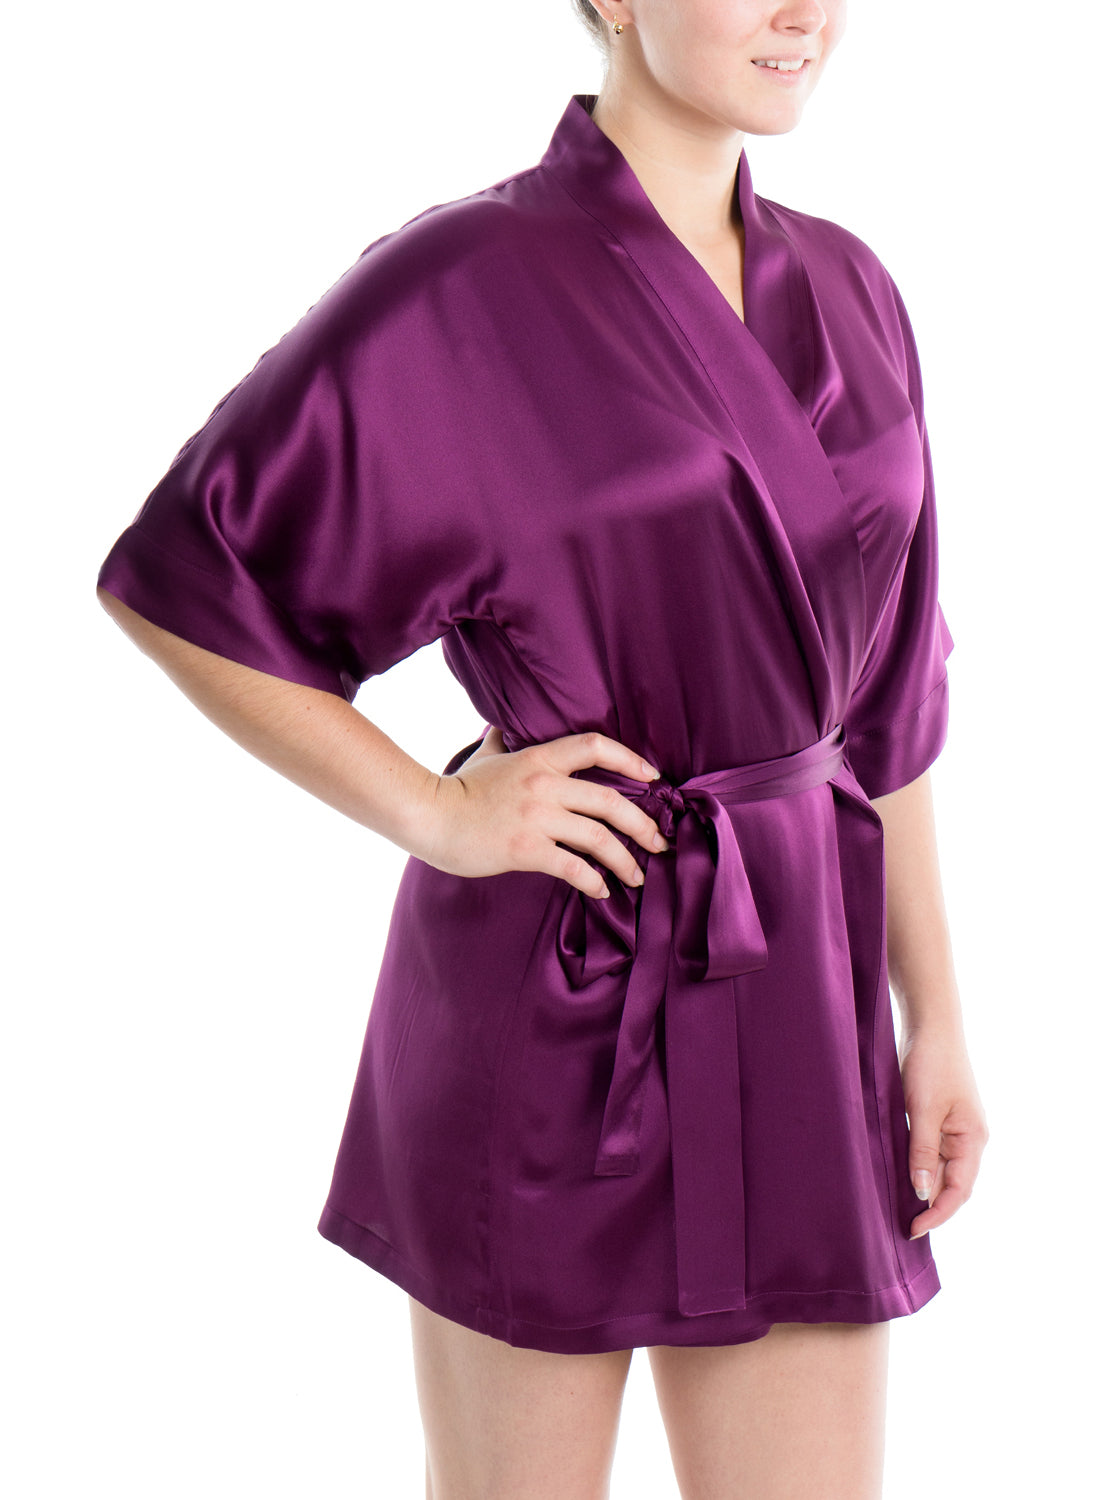 Women's Silk Sleepwear 100% Silk Short Robe - Solid Ruby Wine / S